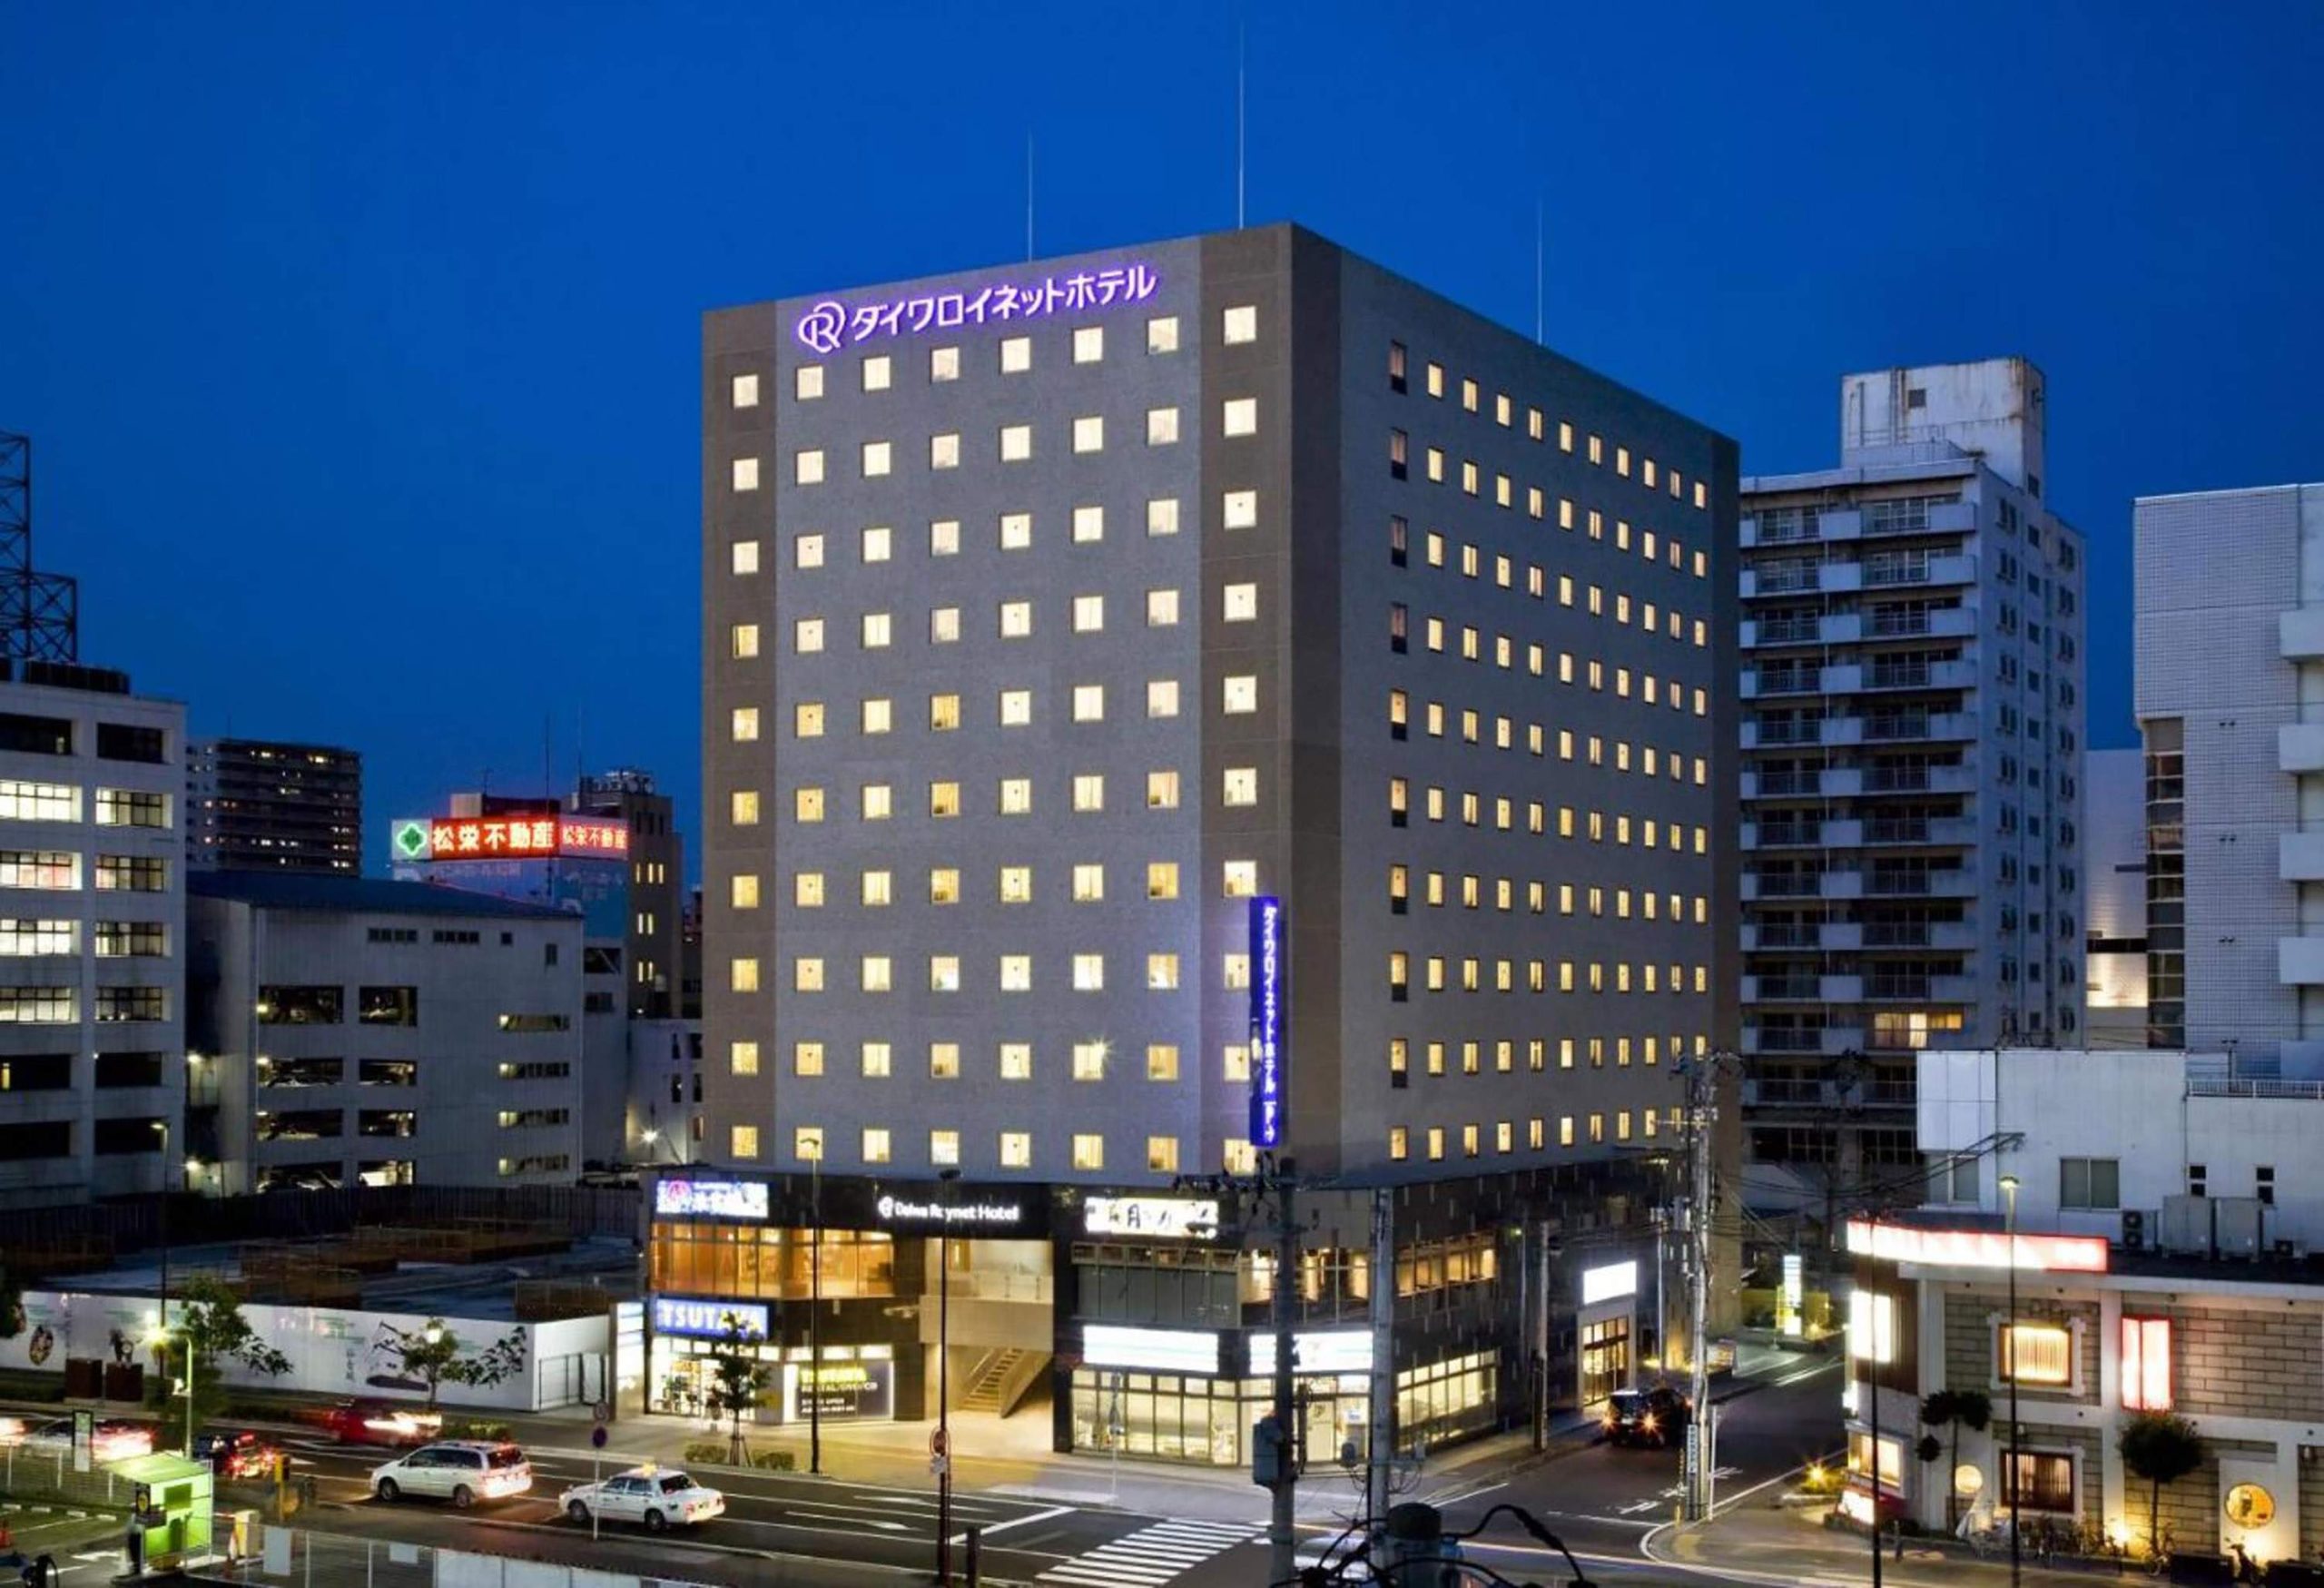 仙台大和roynet飯店,Daiwa Roynet Hotel Sendai,仙台車站住宿推薦,仙台車站附近飯店